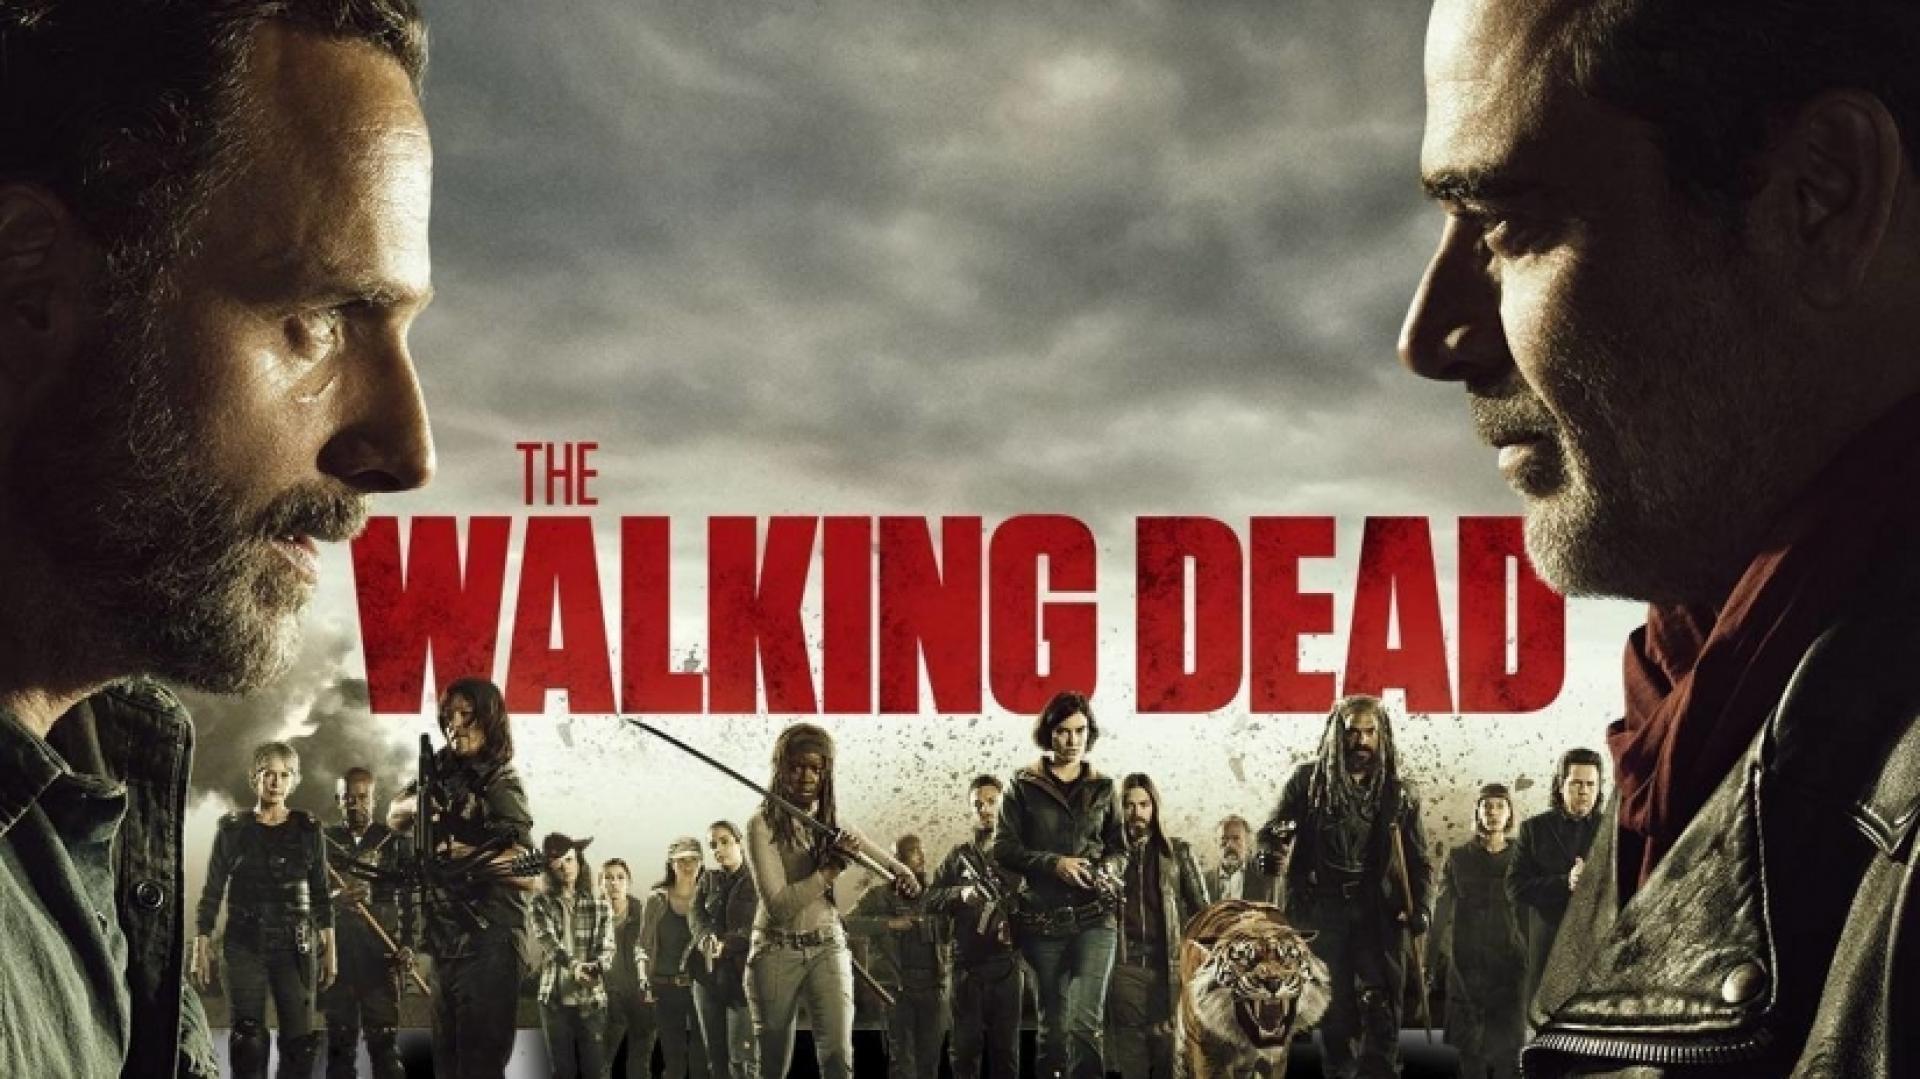 The Walking Dead 8. évadának értékelése